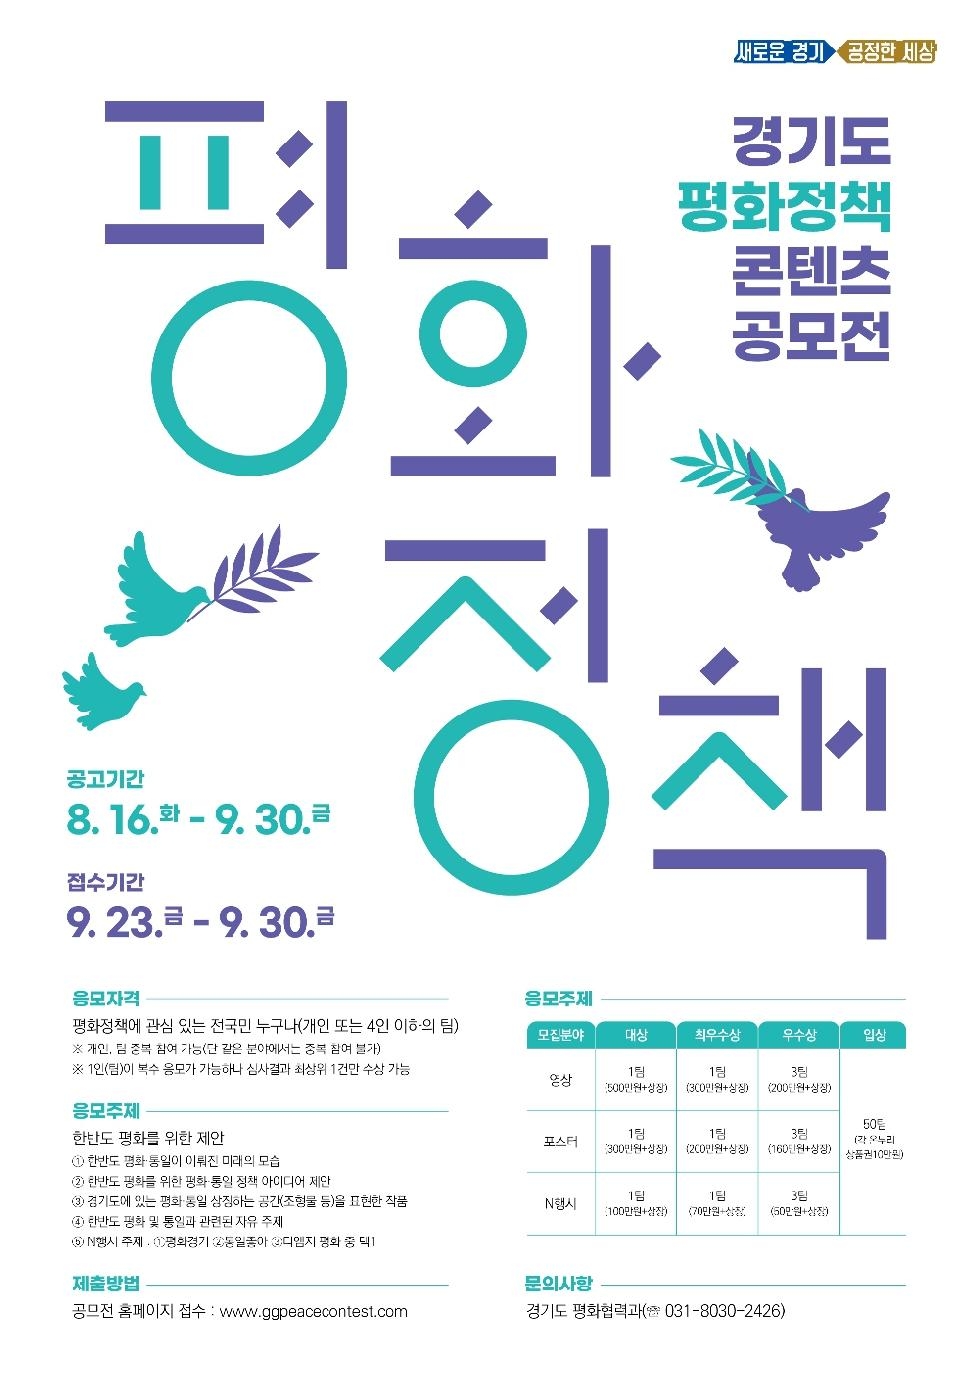 “내가 생각하는 평화통일은?” 경기도, 평화정책 콘텐츠 대국민 공모전 개최